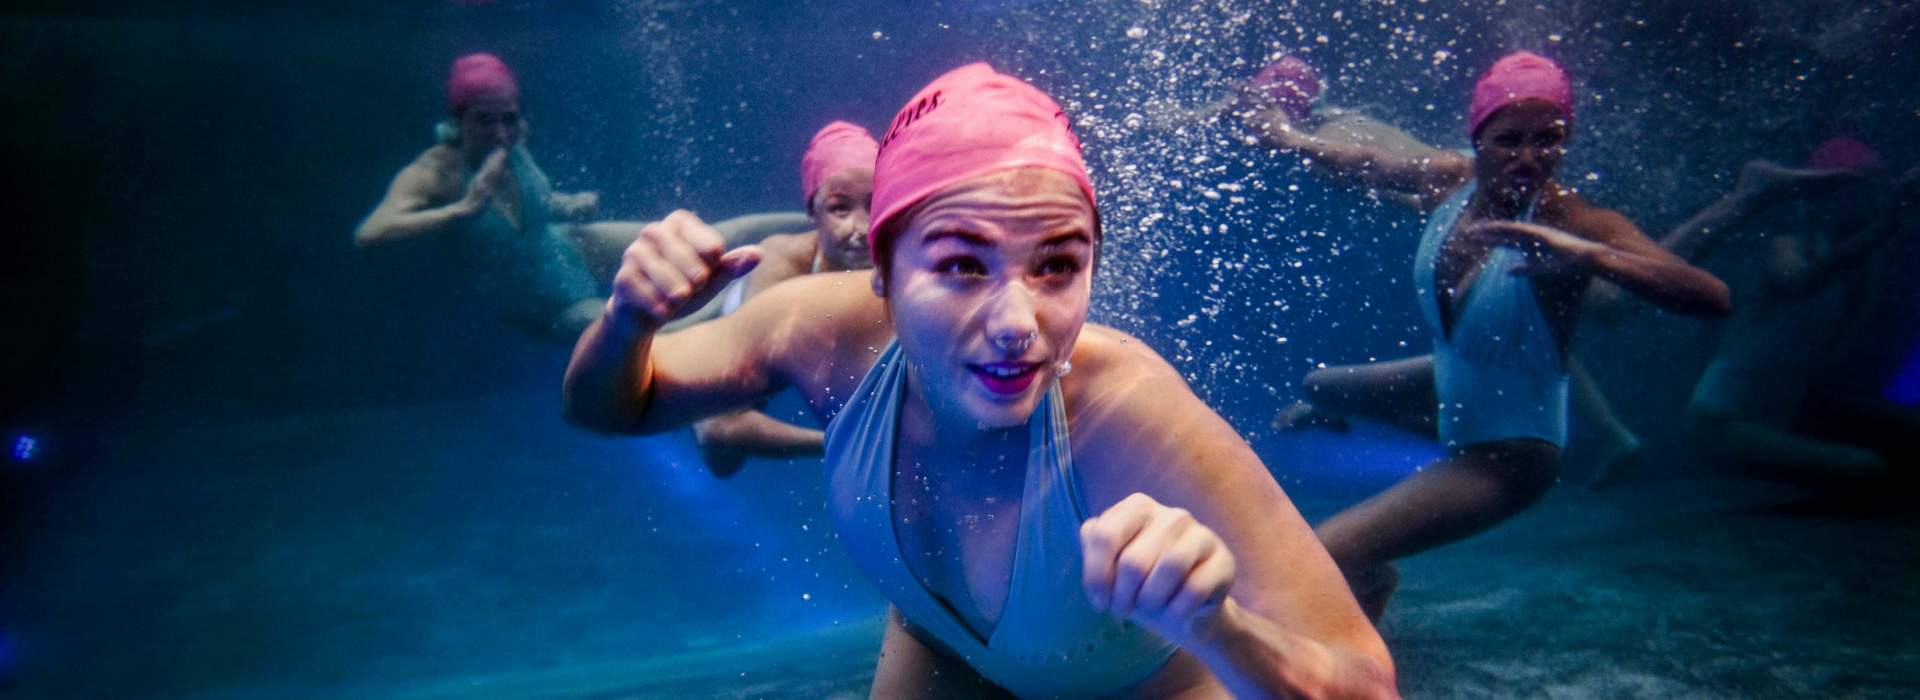 The Aqualillies - Wasserballet der Synchronschwimmerinnen